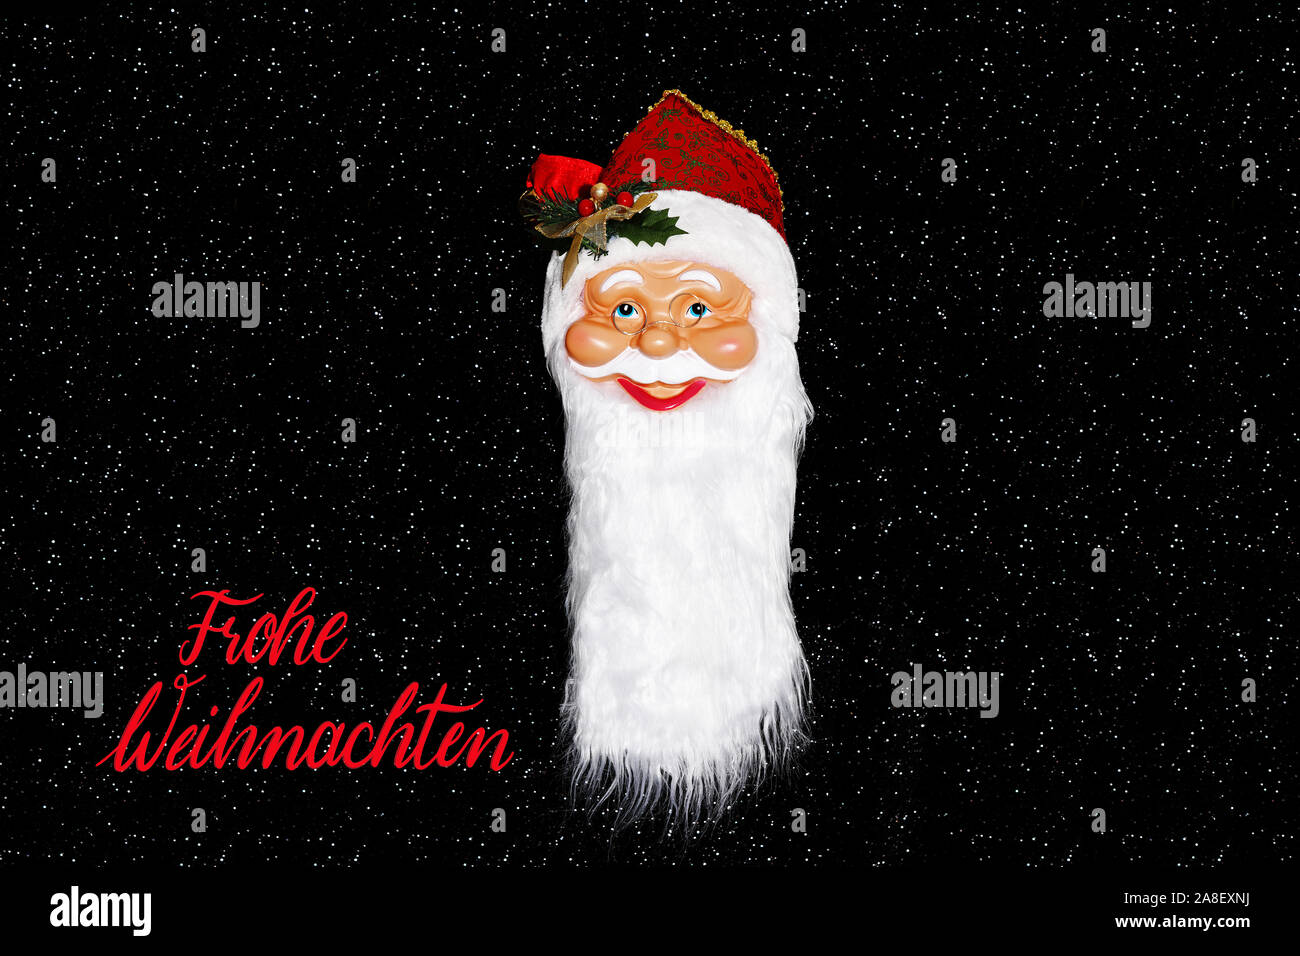 Weihnachtsmann, Santa Claus, Maske, vor Sternenhimmel, Frohe Weihnachten, Banque D'Images